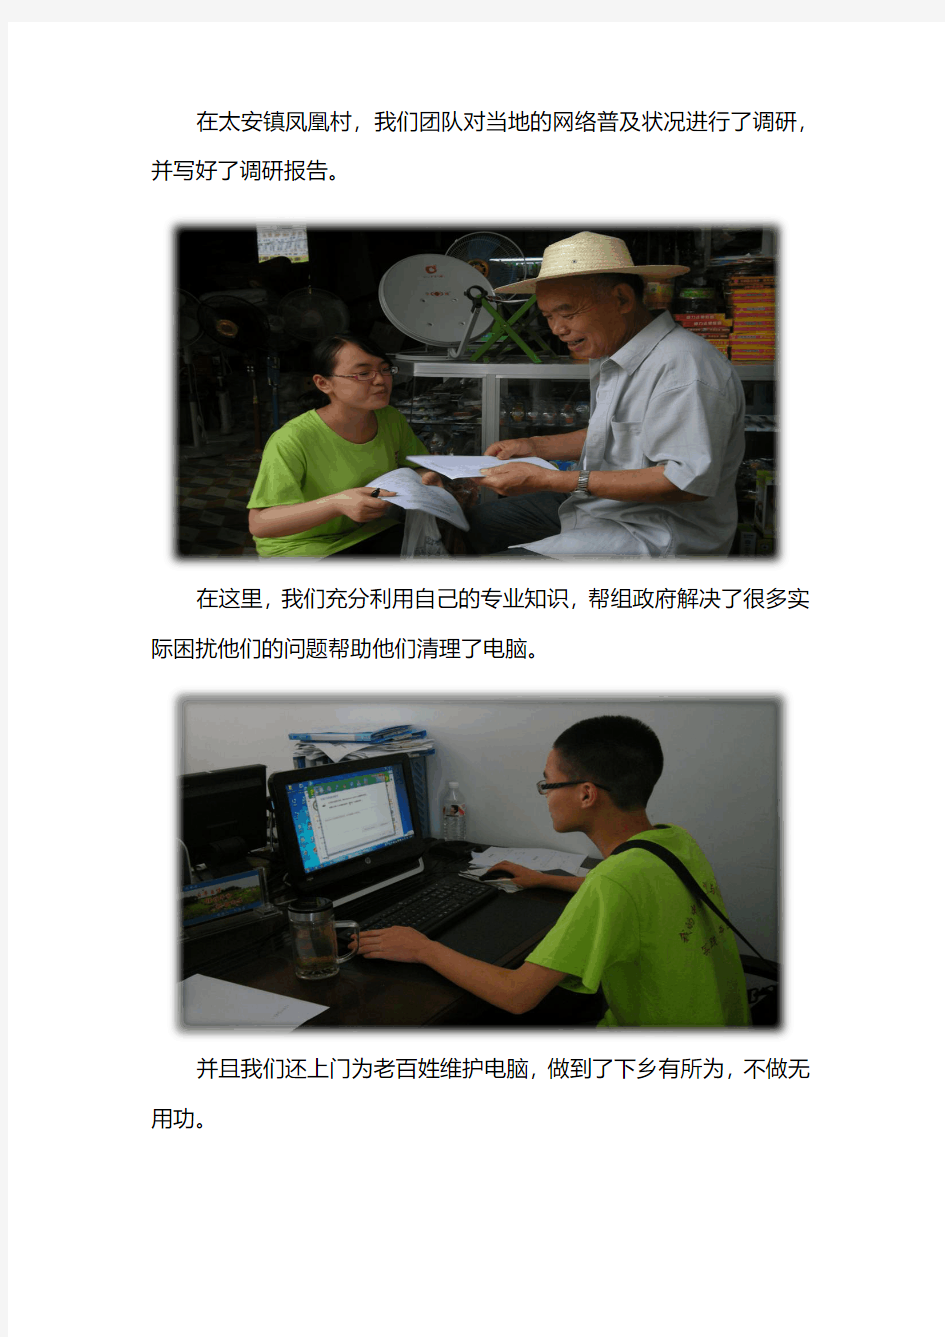 重庆三峡学院电子与信息工程学院“我的中国梦·天翼与你同行”实践服务团在万州区太安镇凤凰村参与社会实践